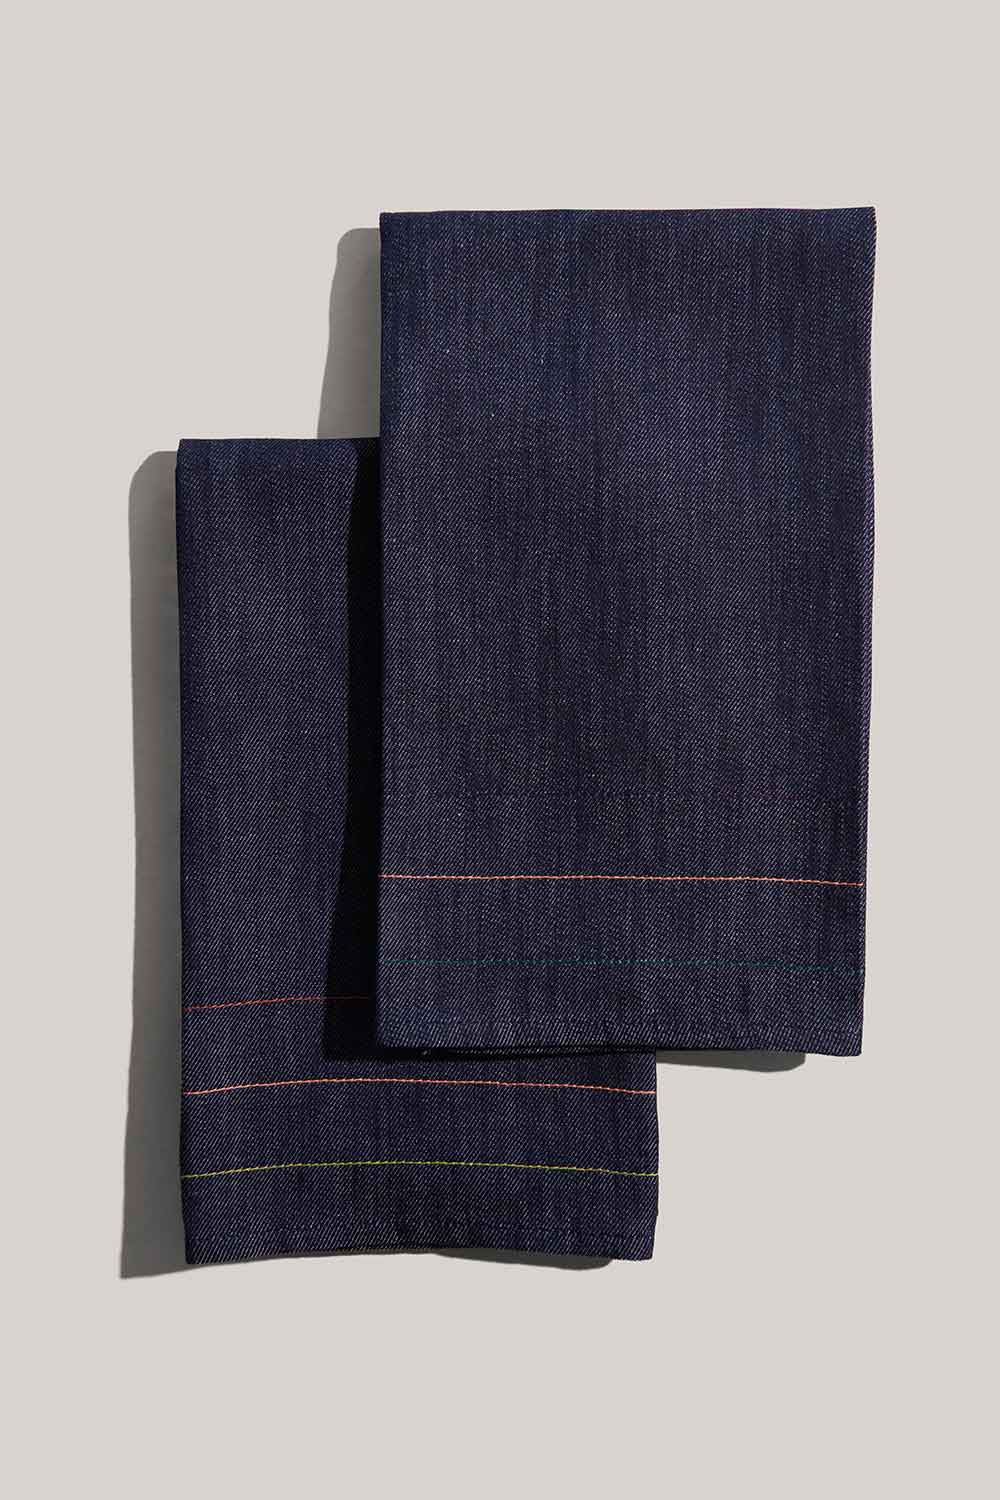 Denim Jewel Tea Towels | Set of 2 TEA TOWELS ATELIER SAUCIER - Atelier Saucier